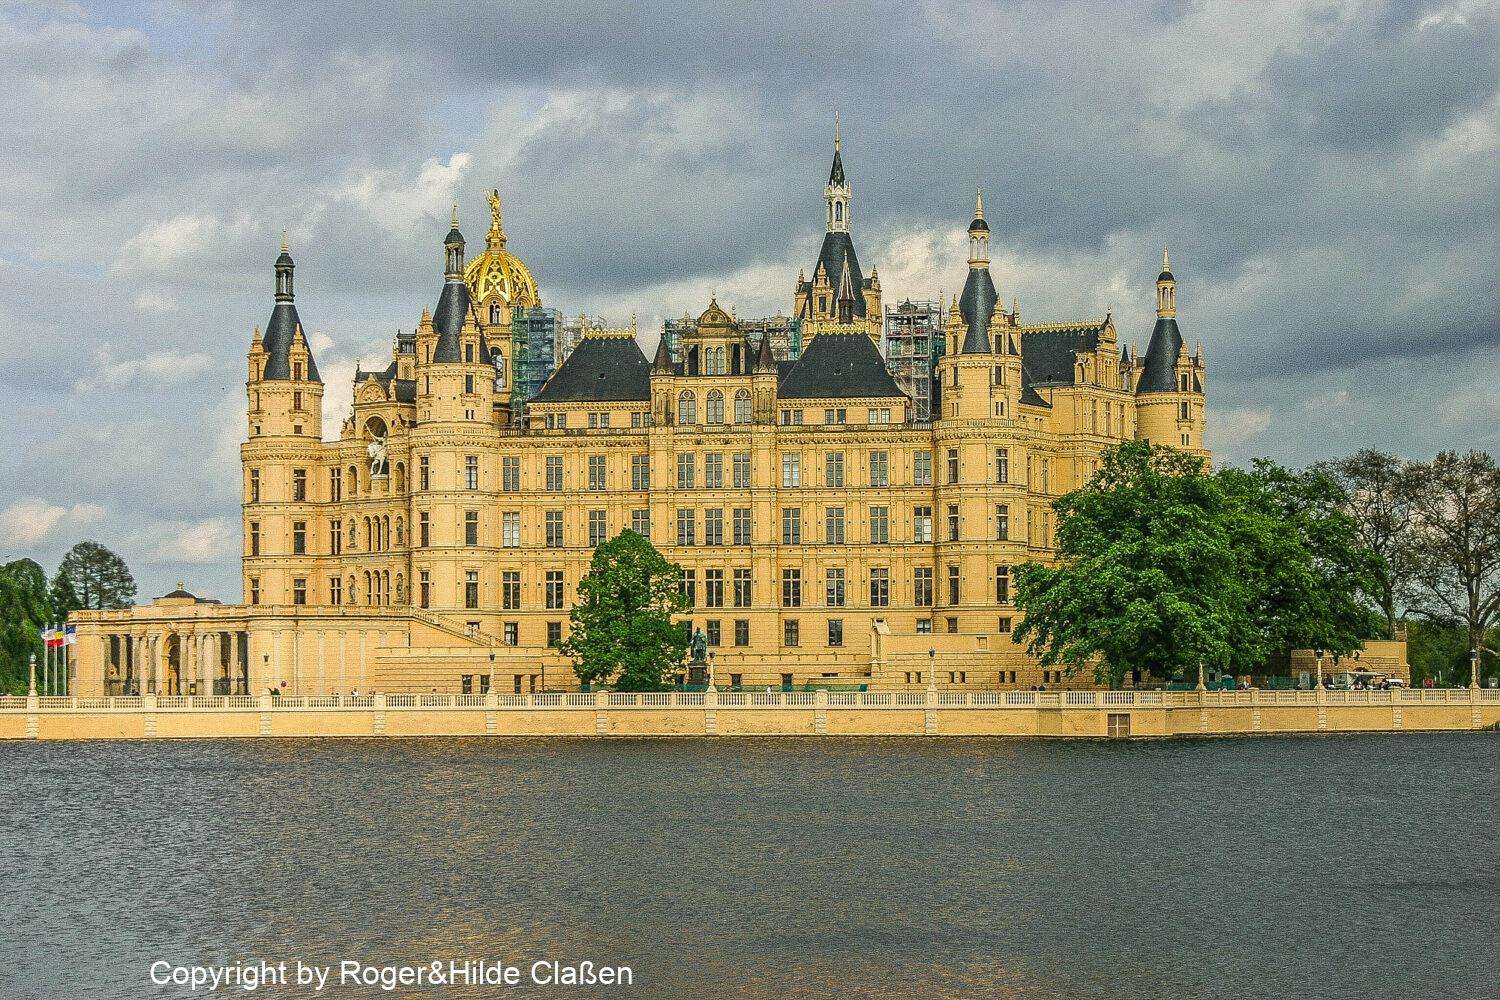 Das Schweriner Schloss in der Hauptstadt von Mecklenburg-Vorpommerns ist Sitz der Landesregierung